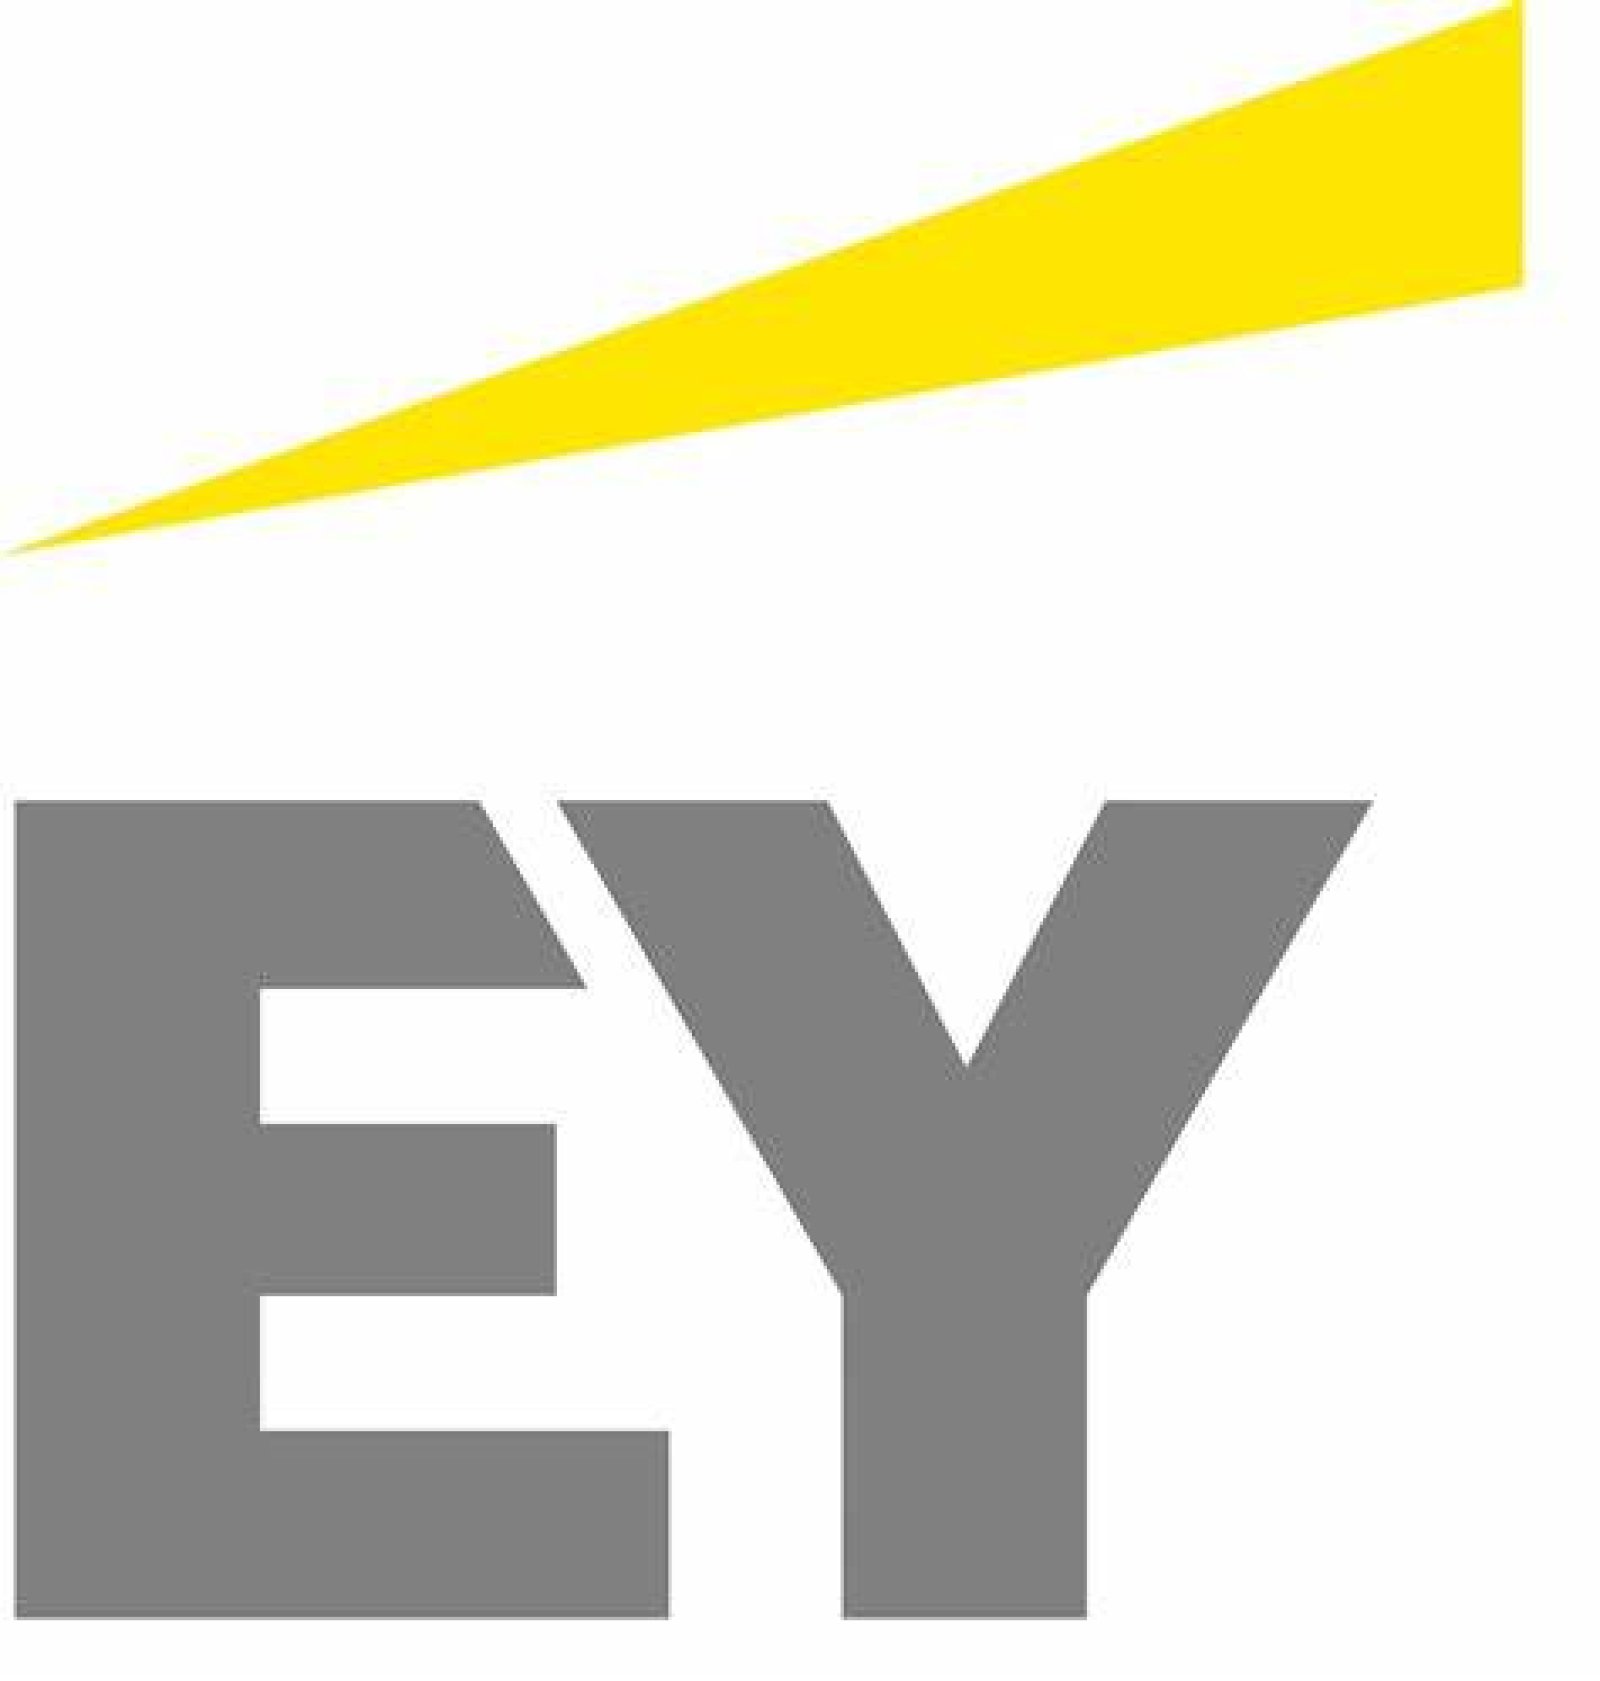 Logo EY 